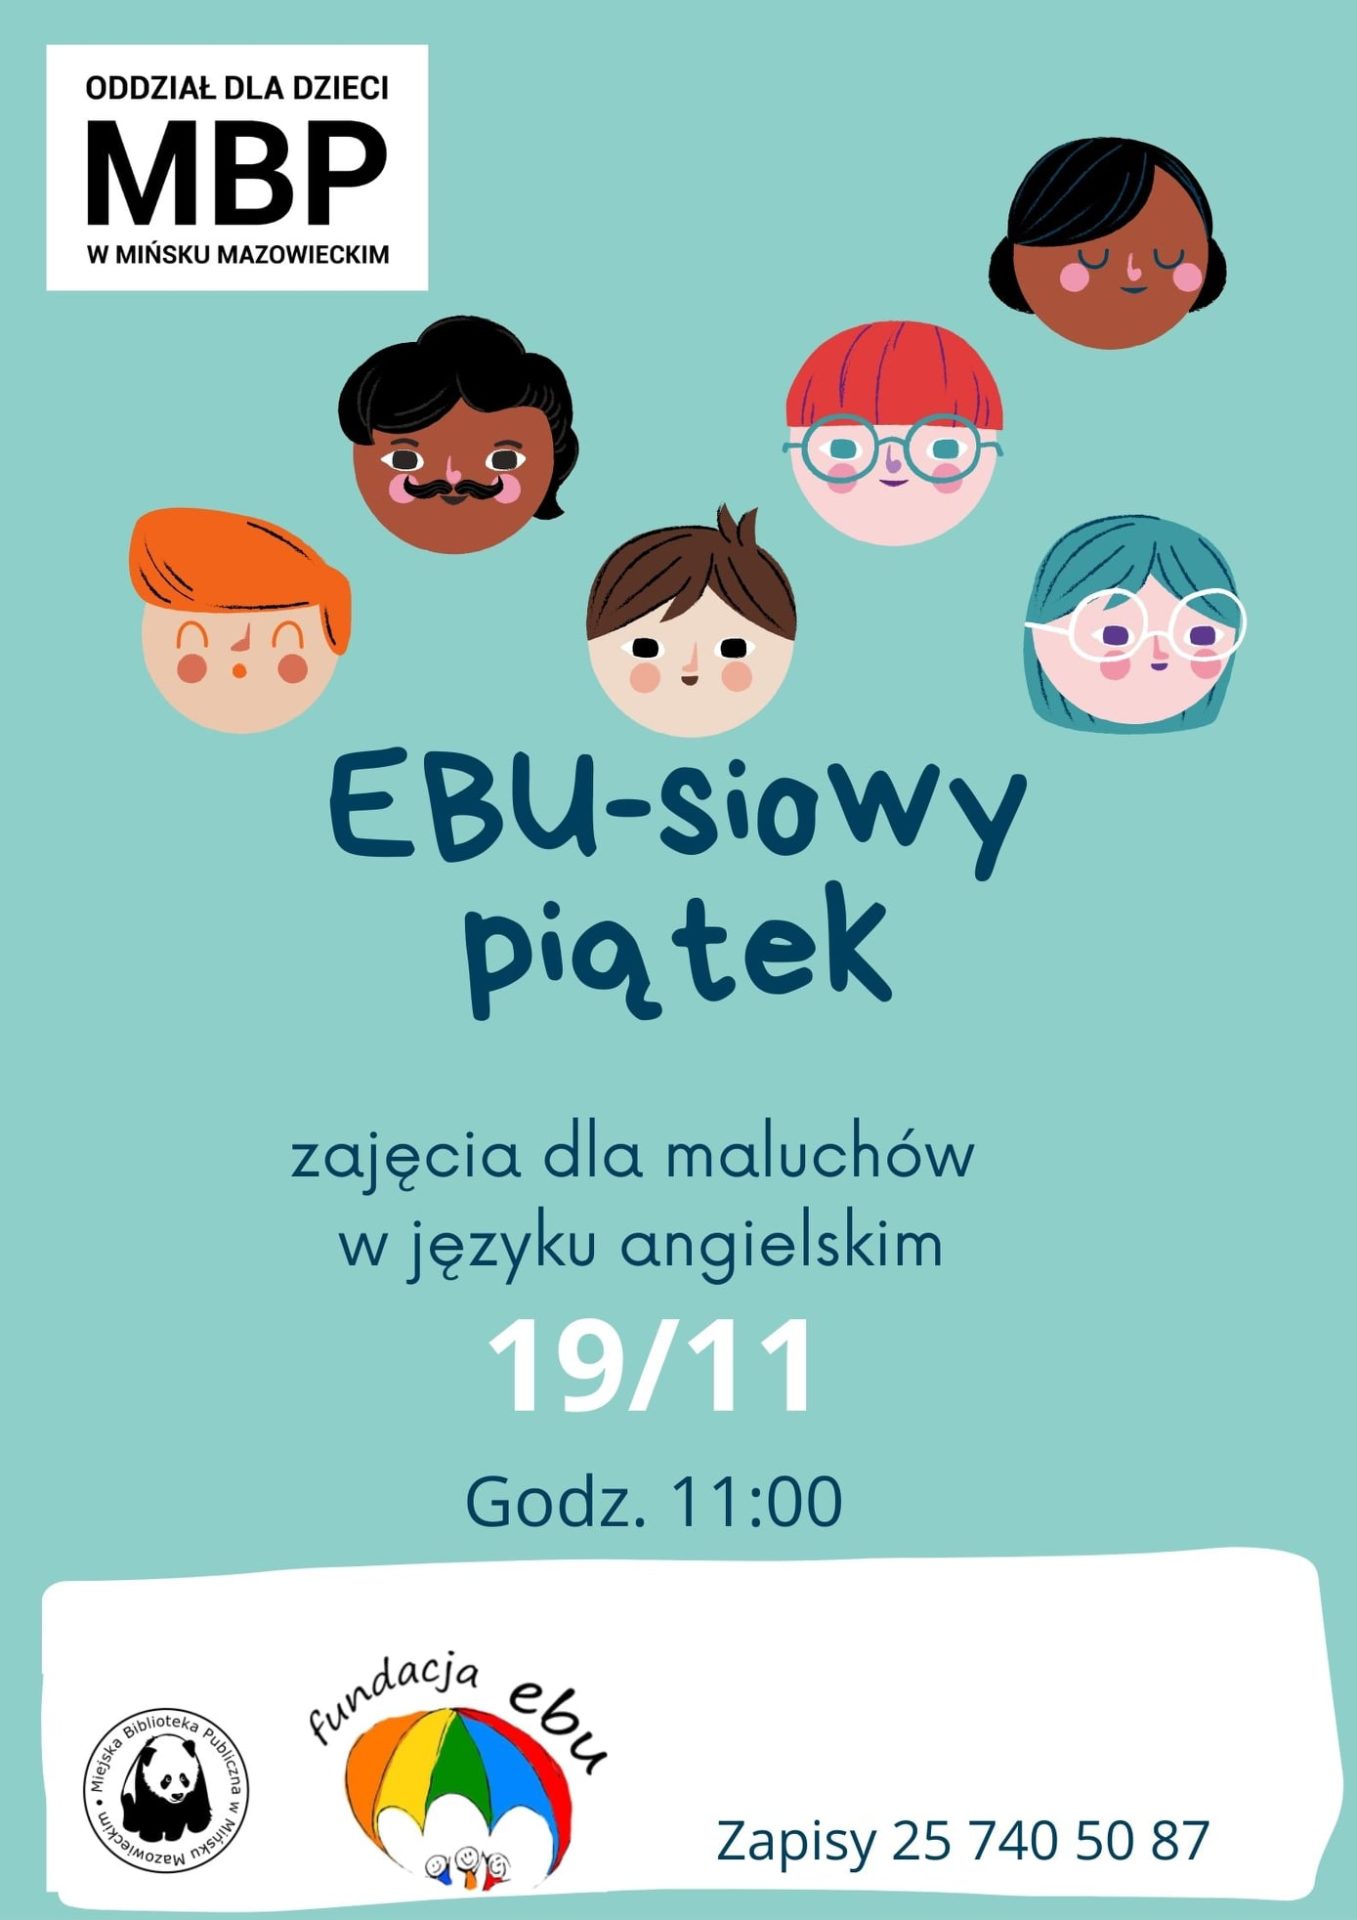 Plakat przedstawia twarze dzieci i osób dorosłych, z informacją o zajęciach dla maluchów w języku angielskim.